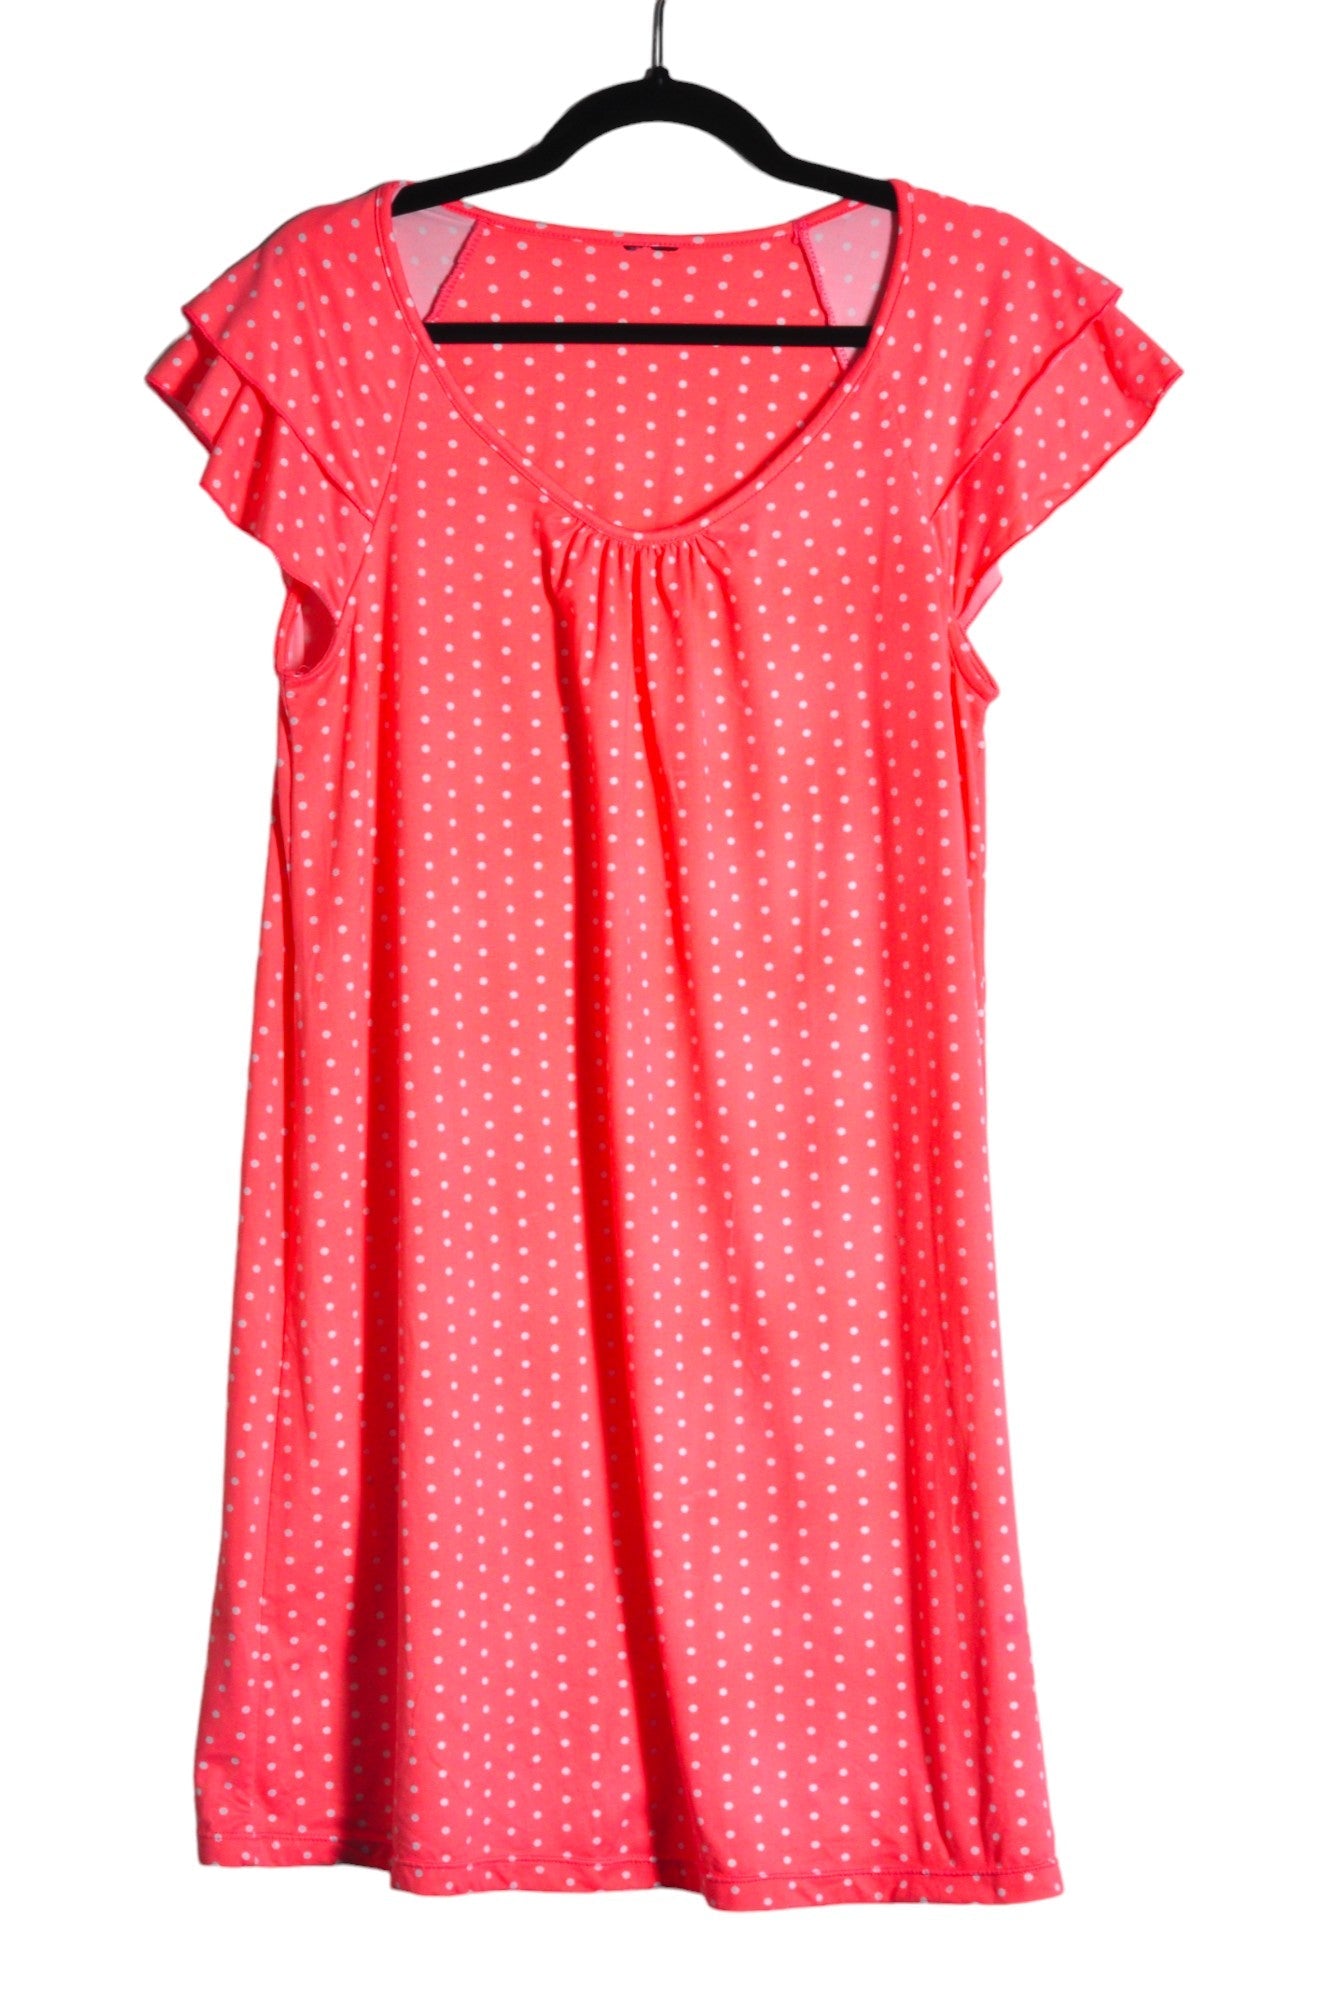 UNBRANDED Women Shift Dresses Regular fit in Pink - Size 1X | 16 $ KOOP